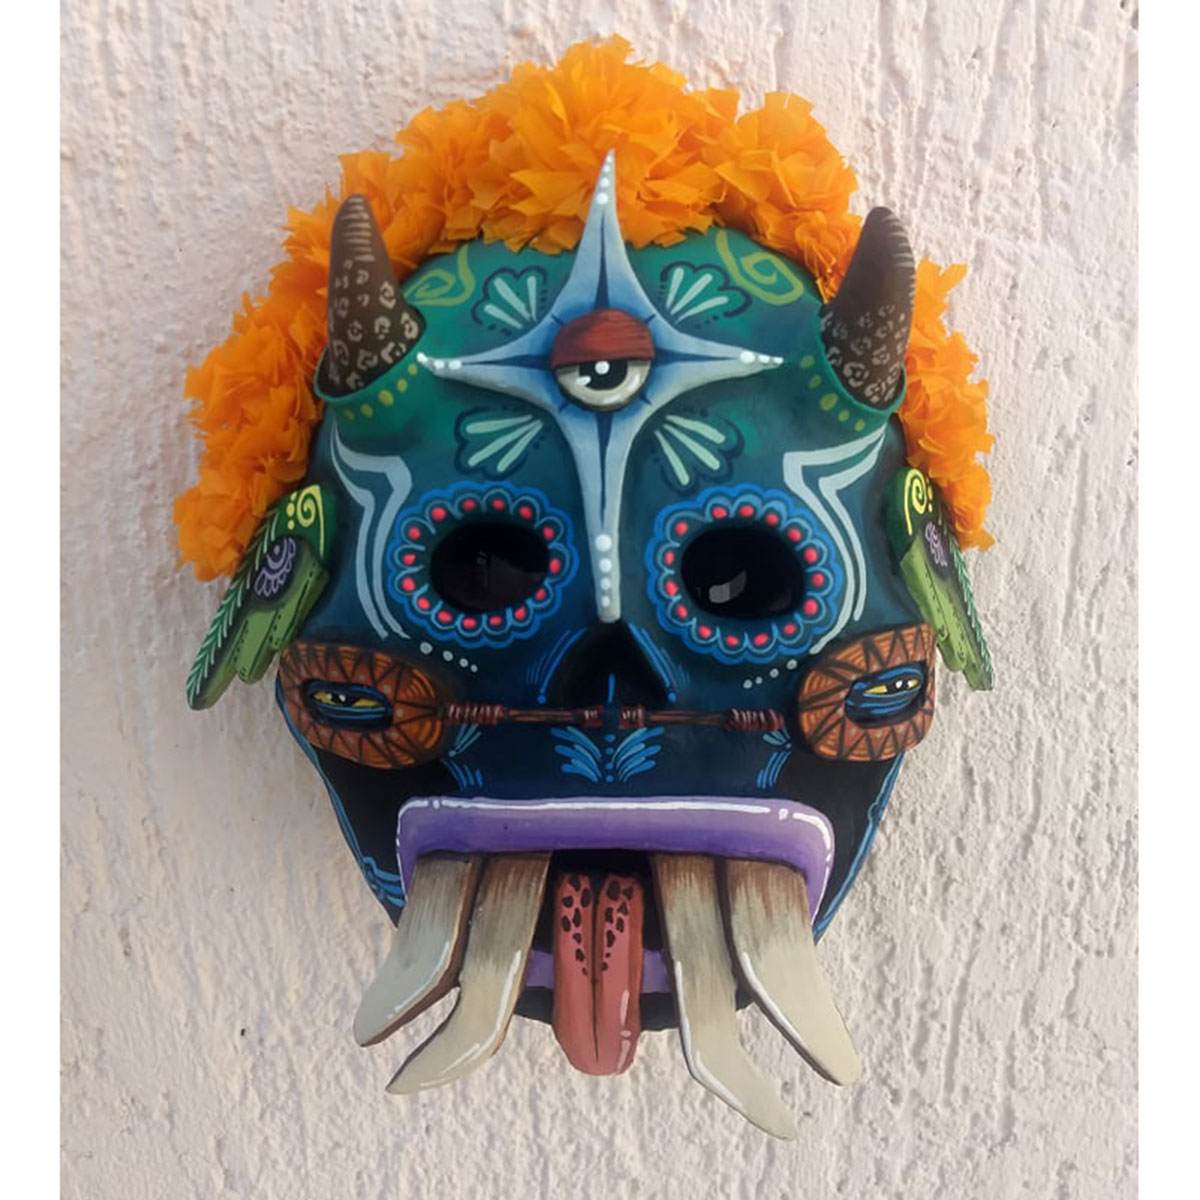 Cartoneria (Mexican Paper Mache) Isaias Alejandro Morales Delgado: Handmade Wearable Mask – Muerte Florida (Flowery Death) Alebrijes